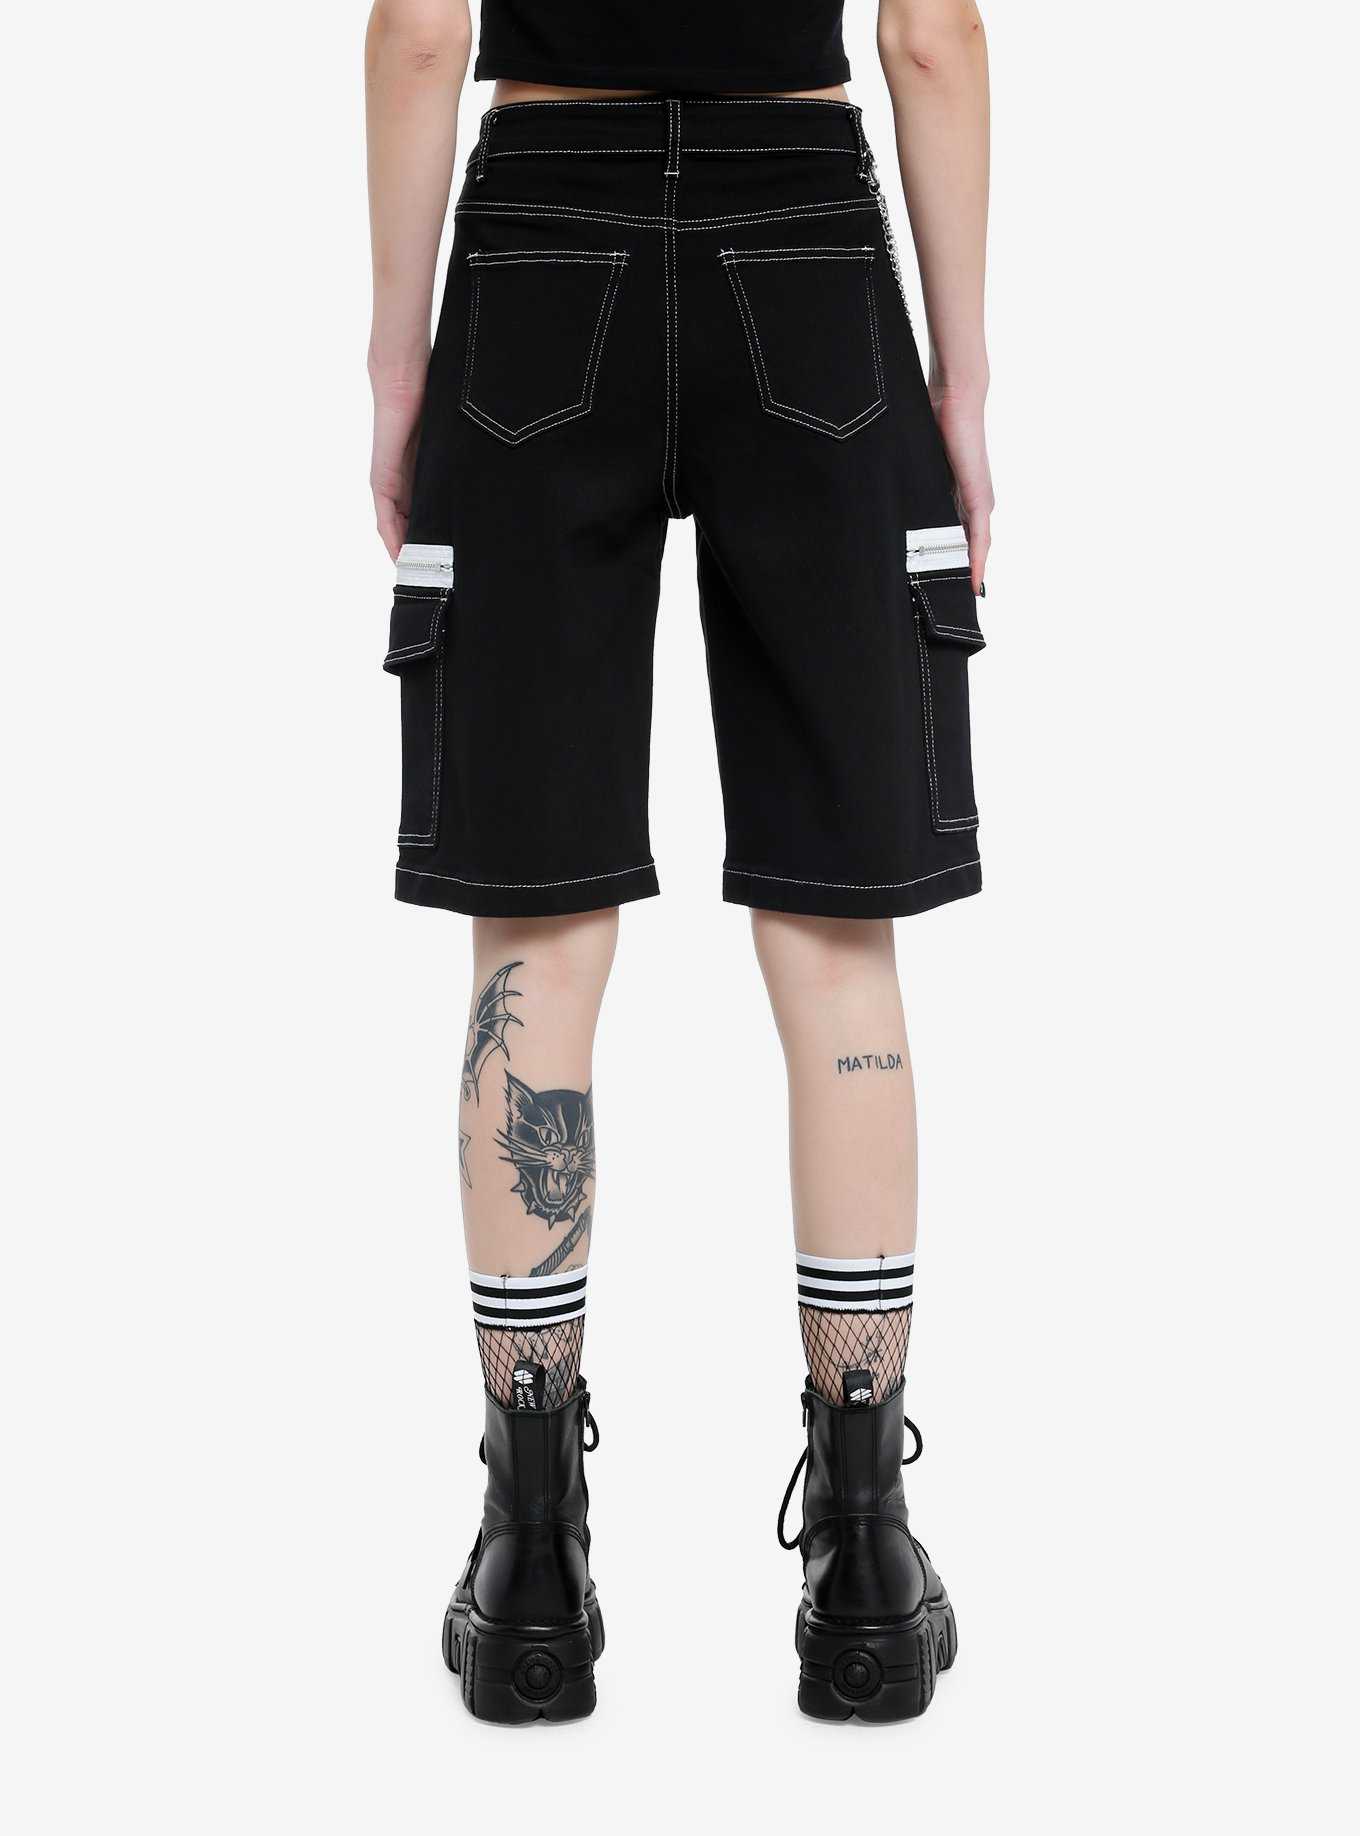 Black Contrast Zipper Pocket Girls Long Shorts, , hi-res